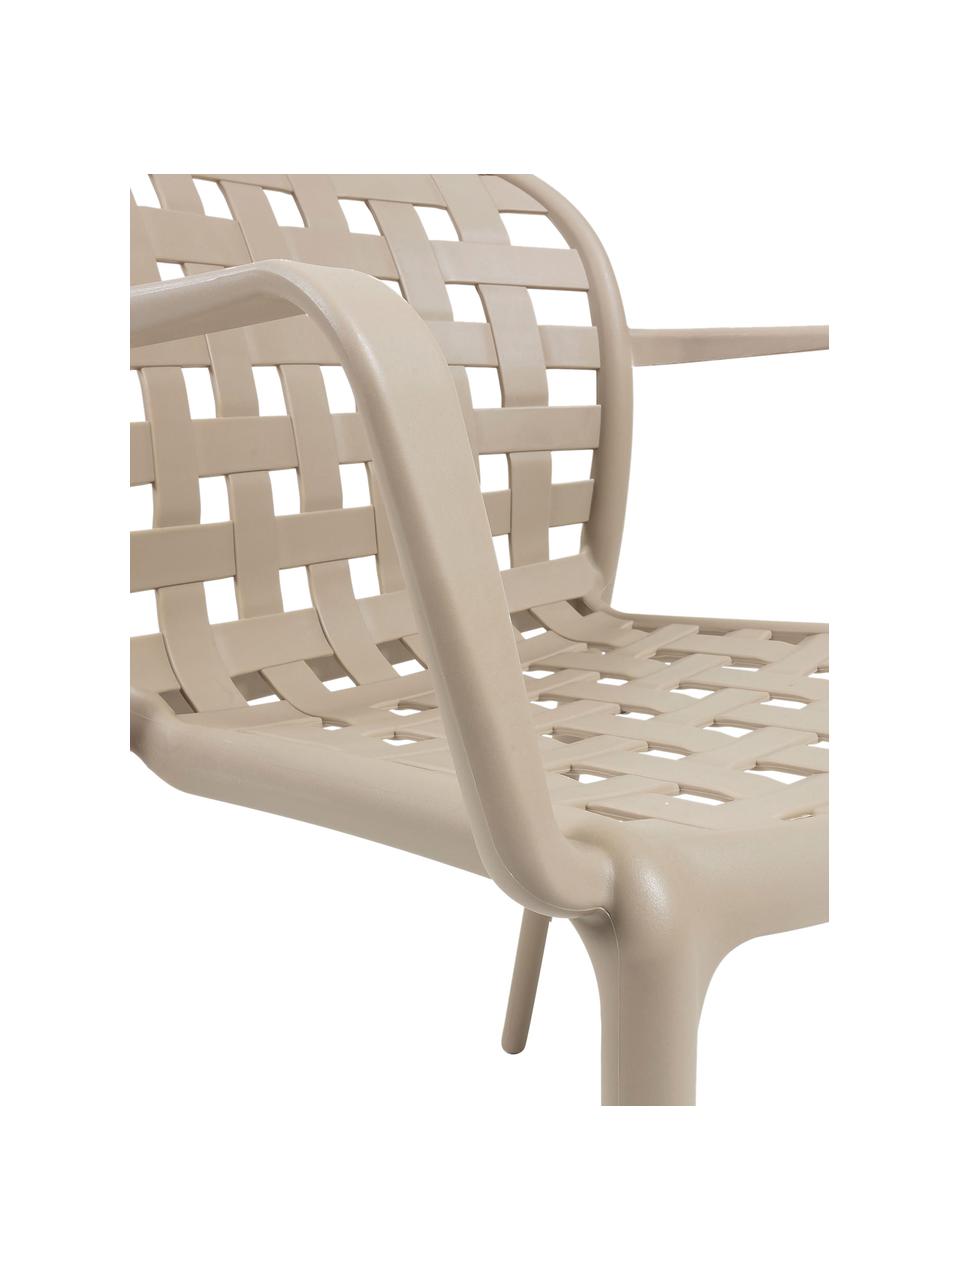 Stapelbare Gartenstühle Isa aus Kunststoff, 2 Stück, Kunststoff, Beige, B 58 x T 58 cm